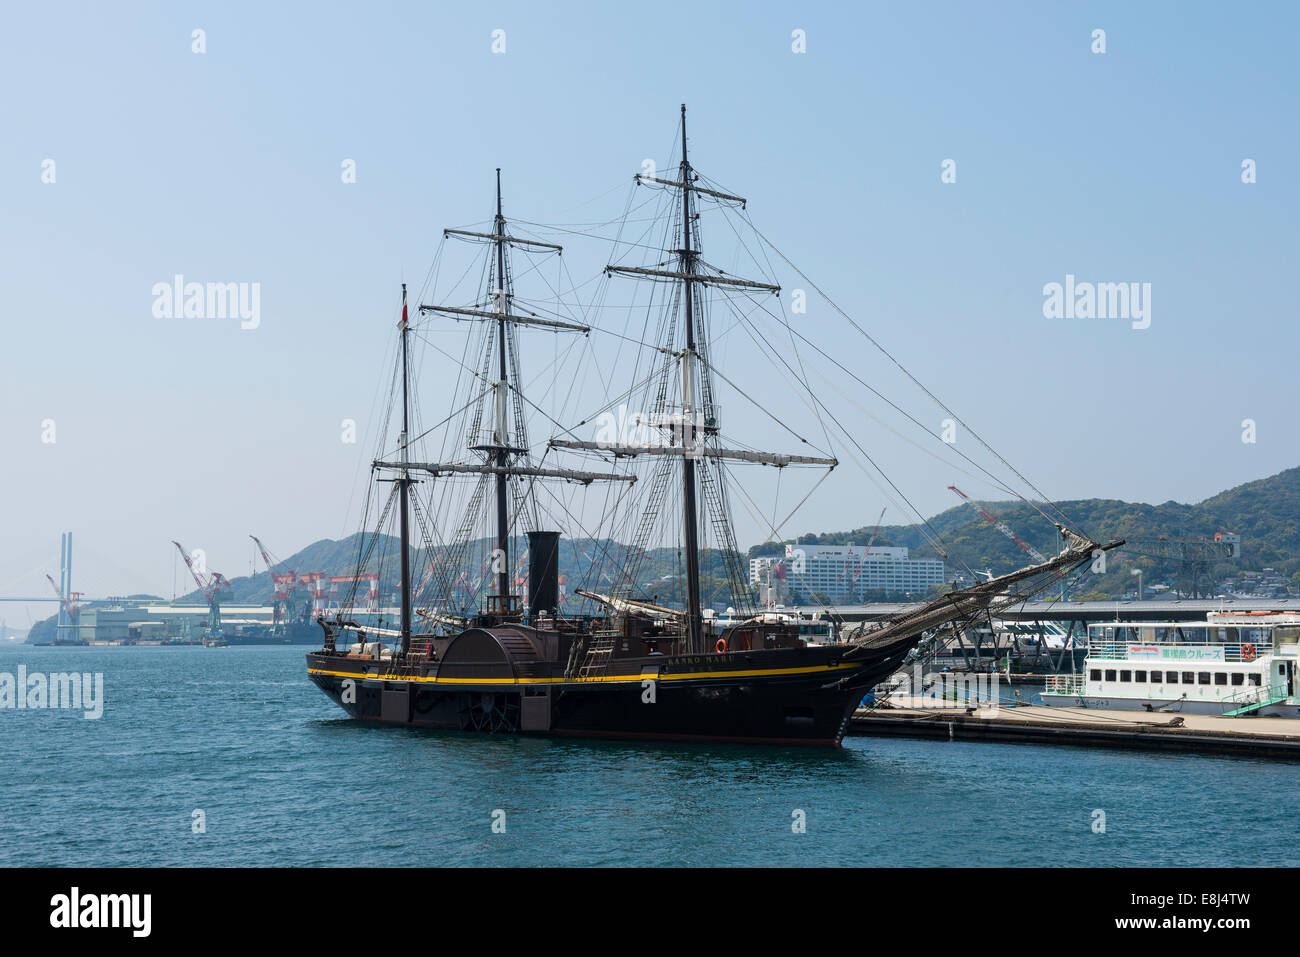 Old sailing ship, Nagasaki harbour, Japan Stock Photo